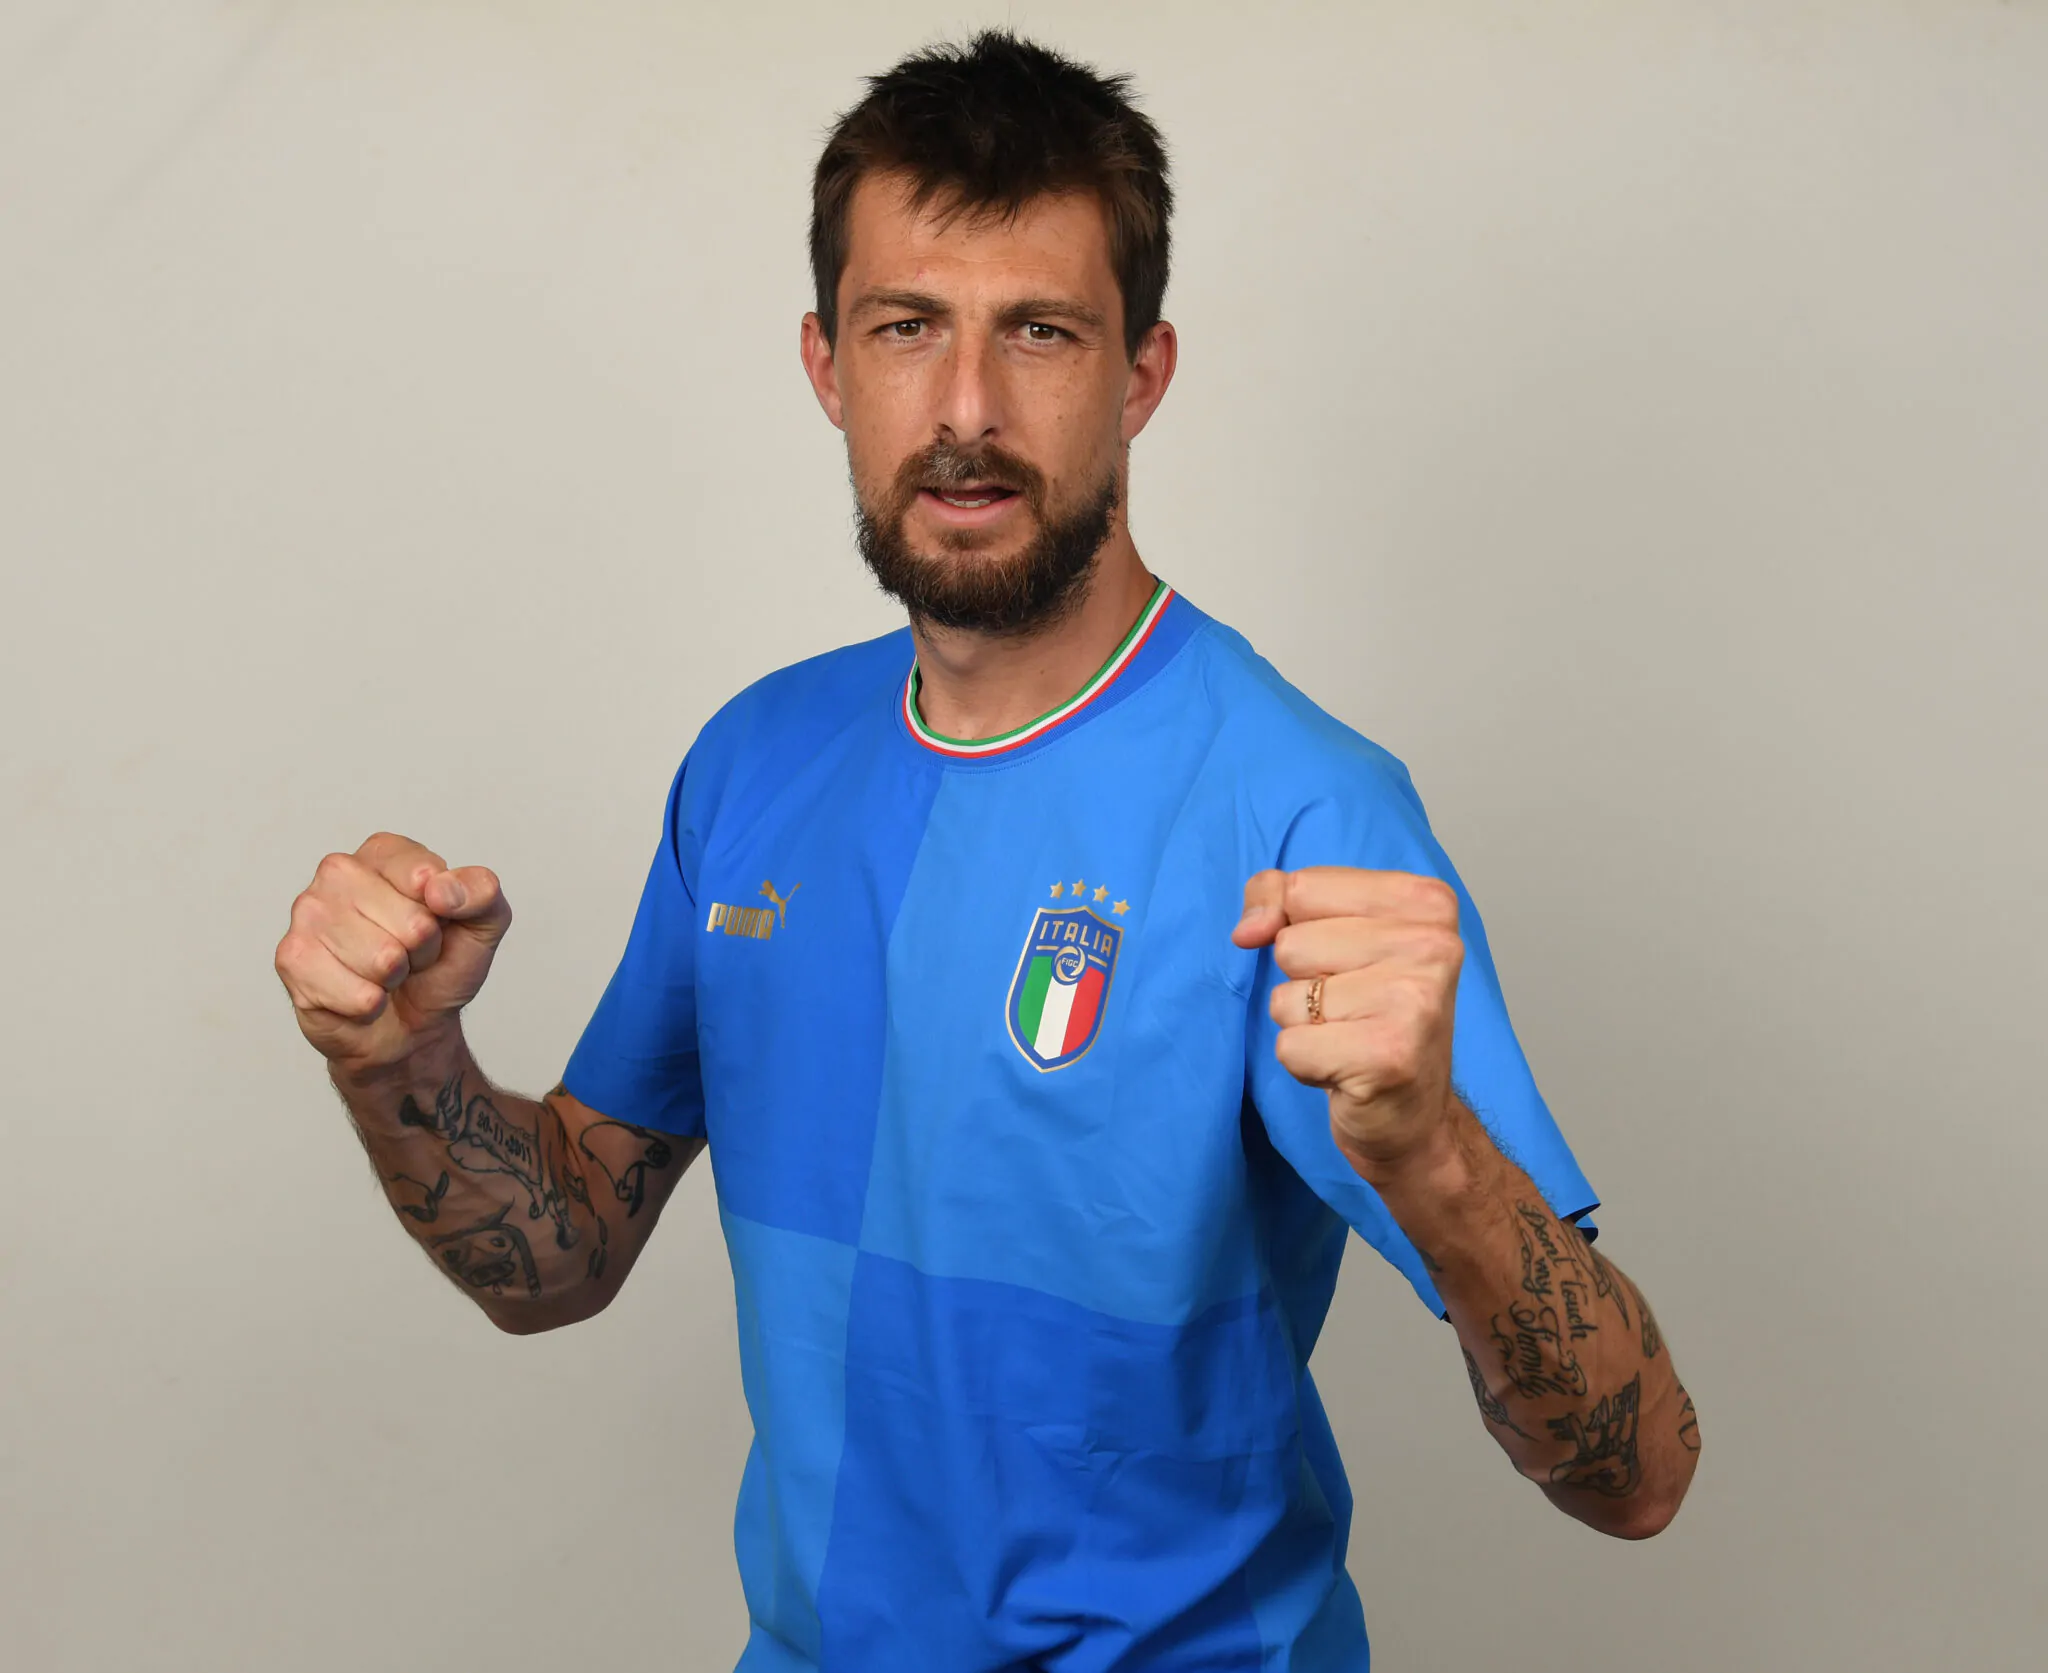 Защитник сборной Италии Ачерби назвал причину непопадания «Скуадры адзурры» на чемпионат мира в Катаре